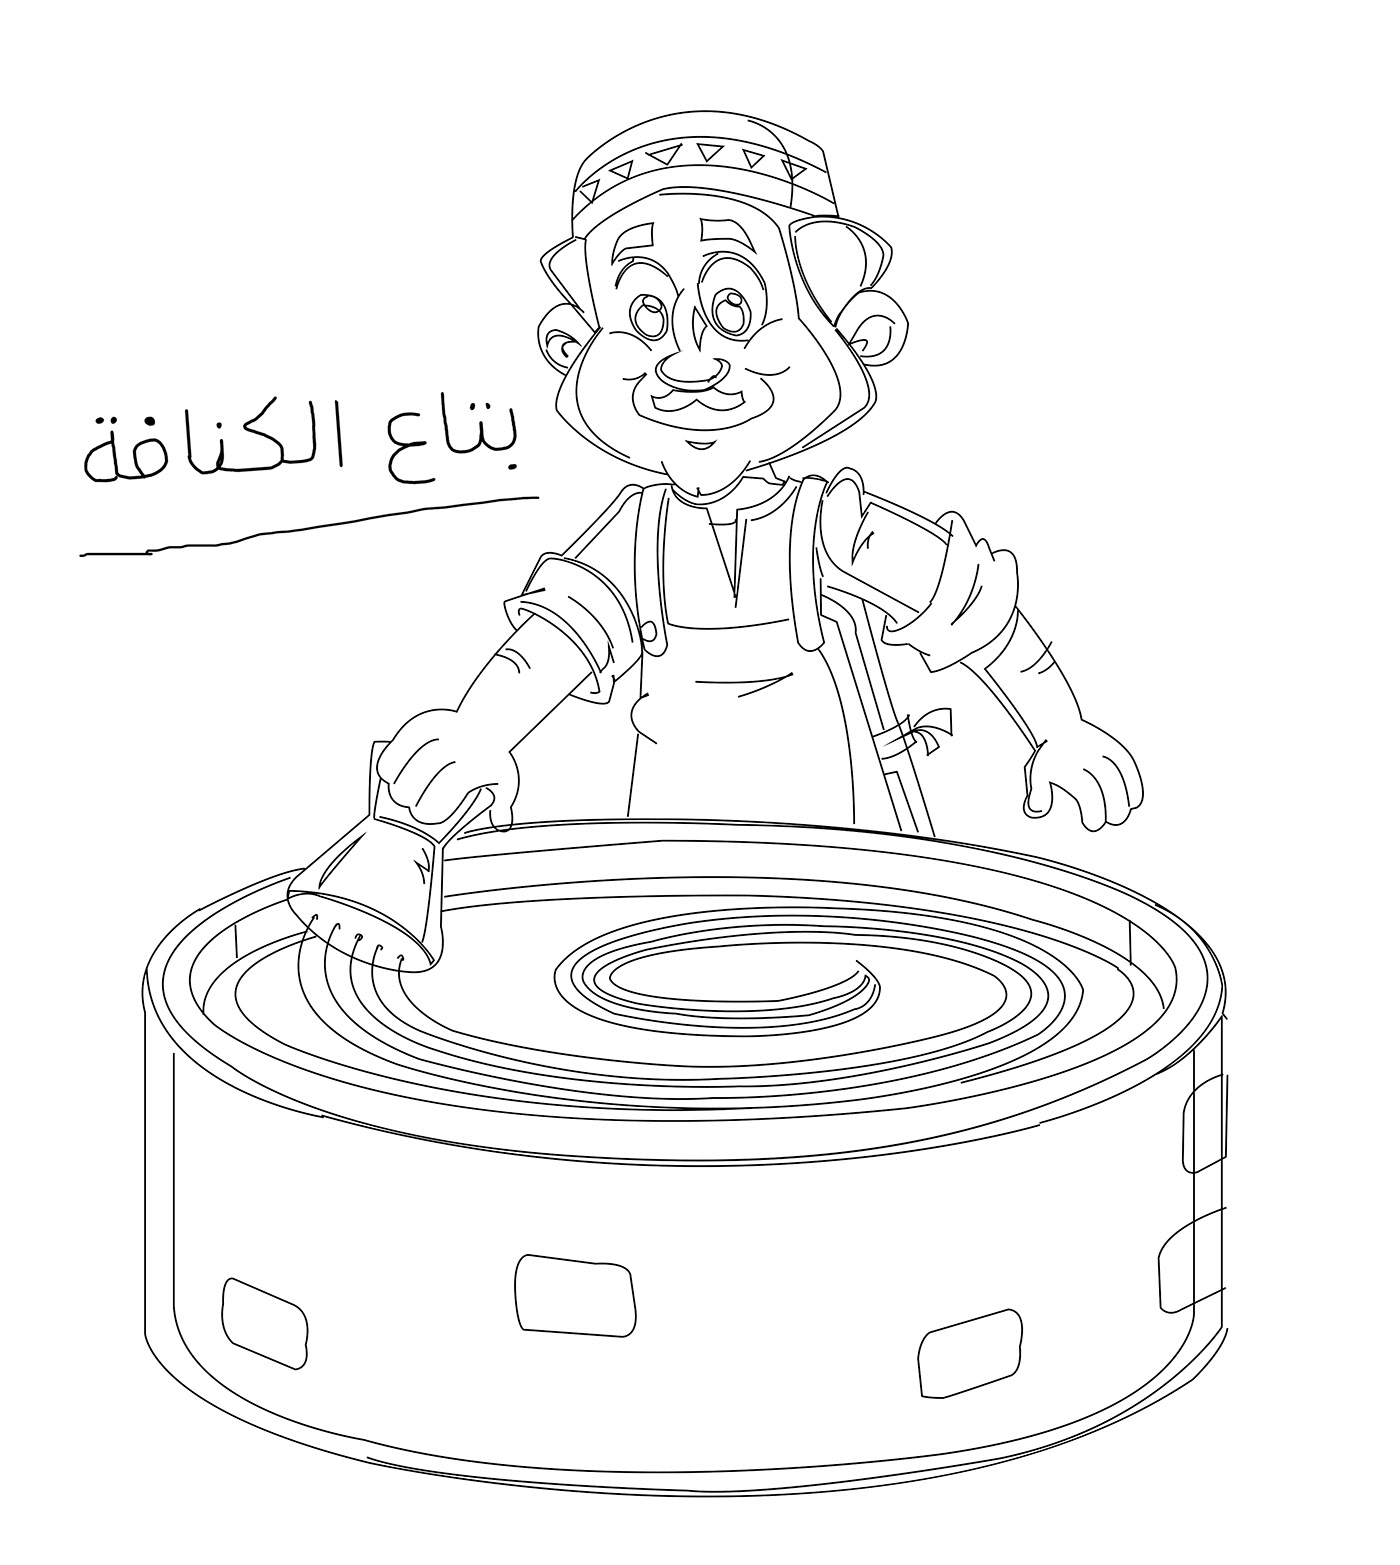 3D Character cartoon character Digital Art  digital painting Drawing  ILLUSTRATION  ramadan kareem vector art Zbrush